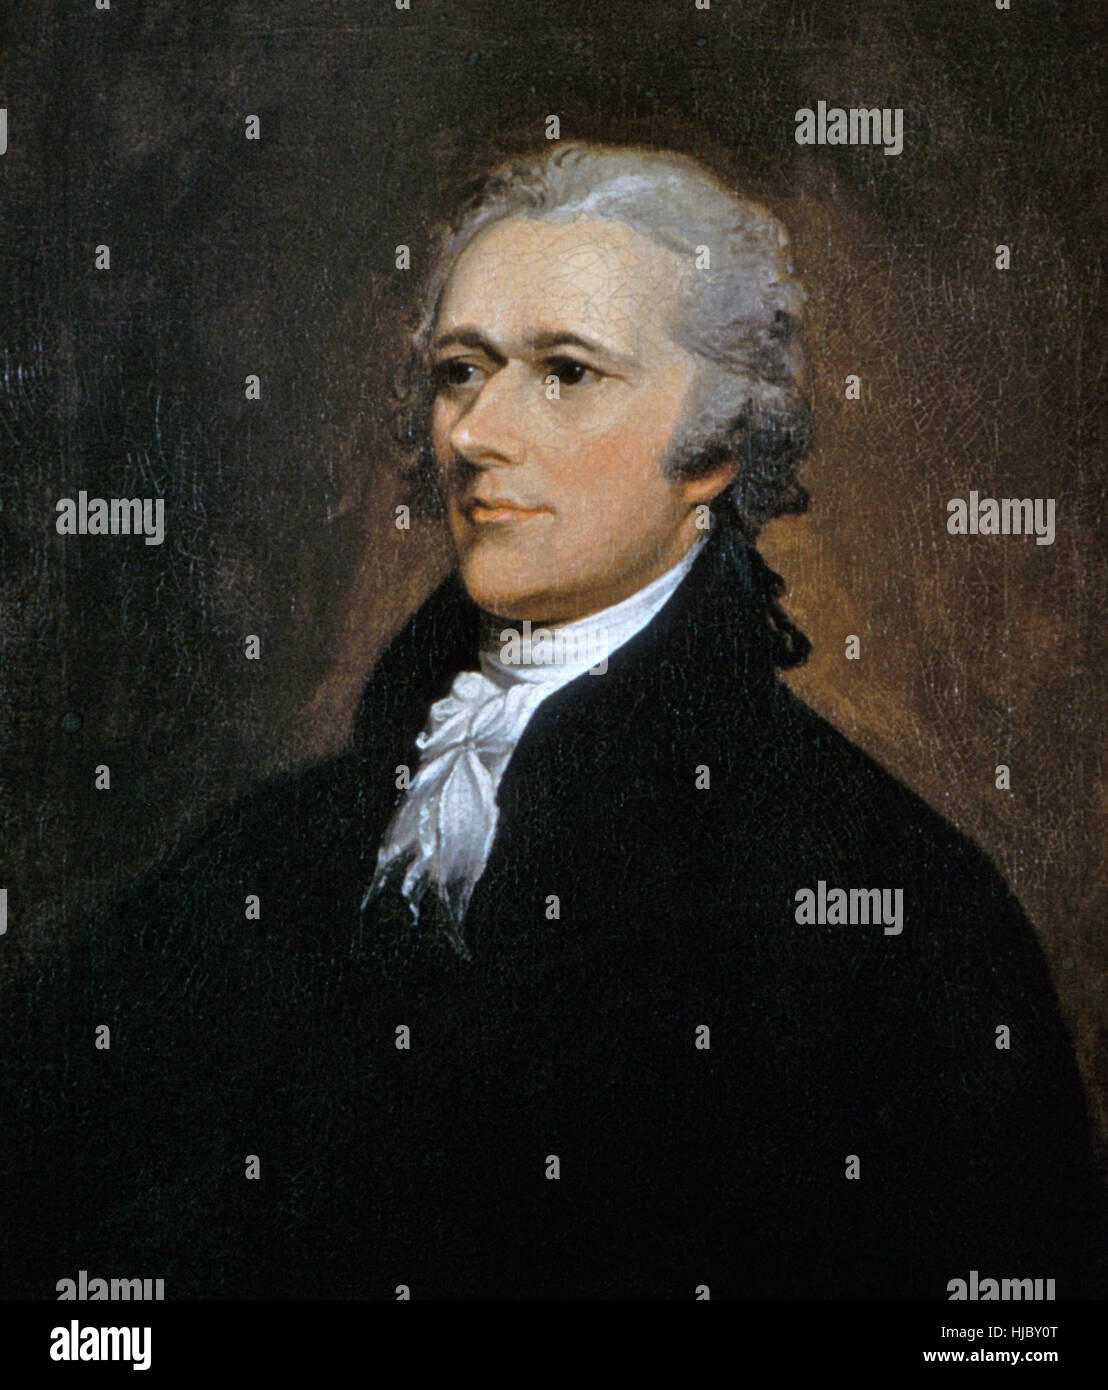 ALEXANDER HAMILTON (1755 ? - 1804) L'un des pères fondateurs des États-Unis. peint par Antoine Jean en 1806 Banque D'Images